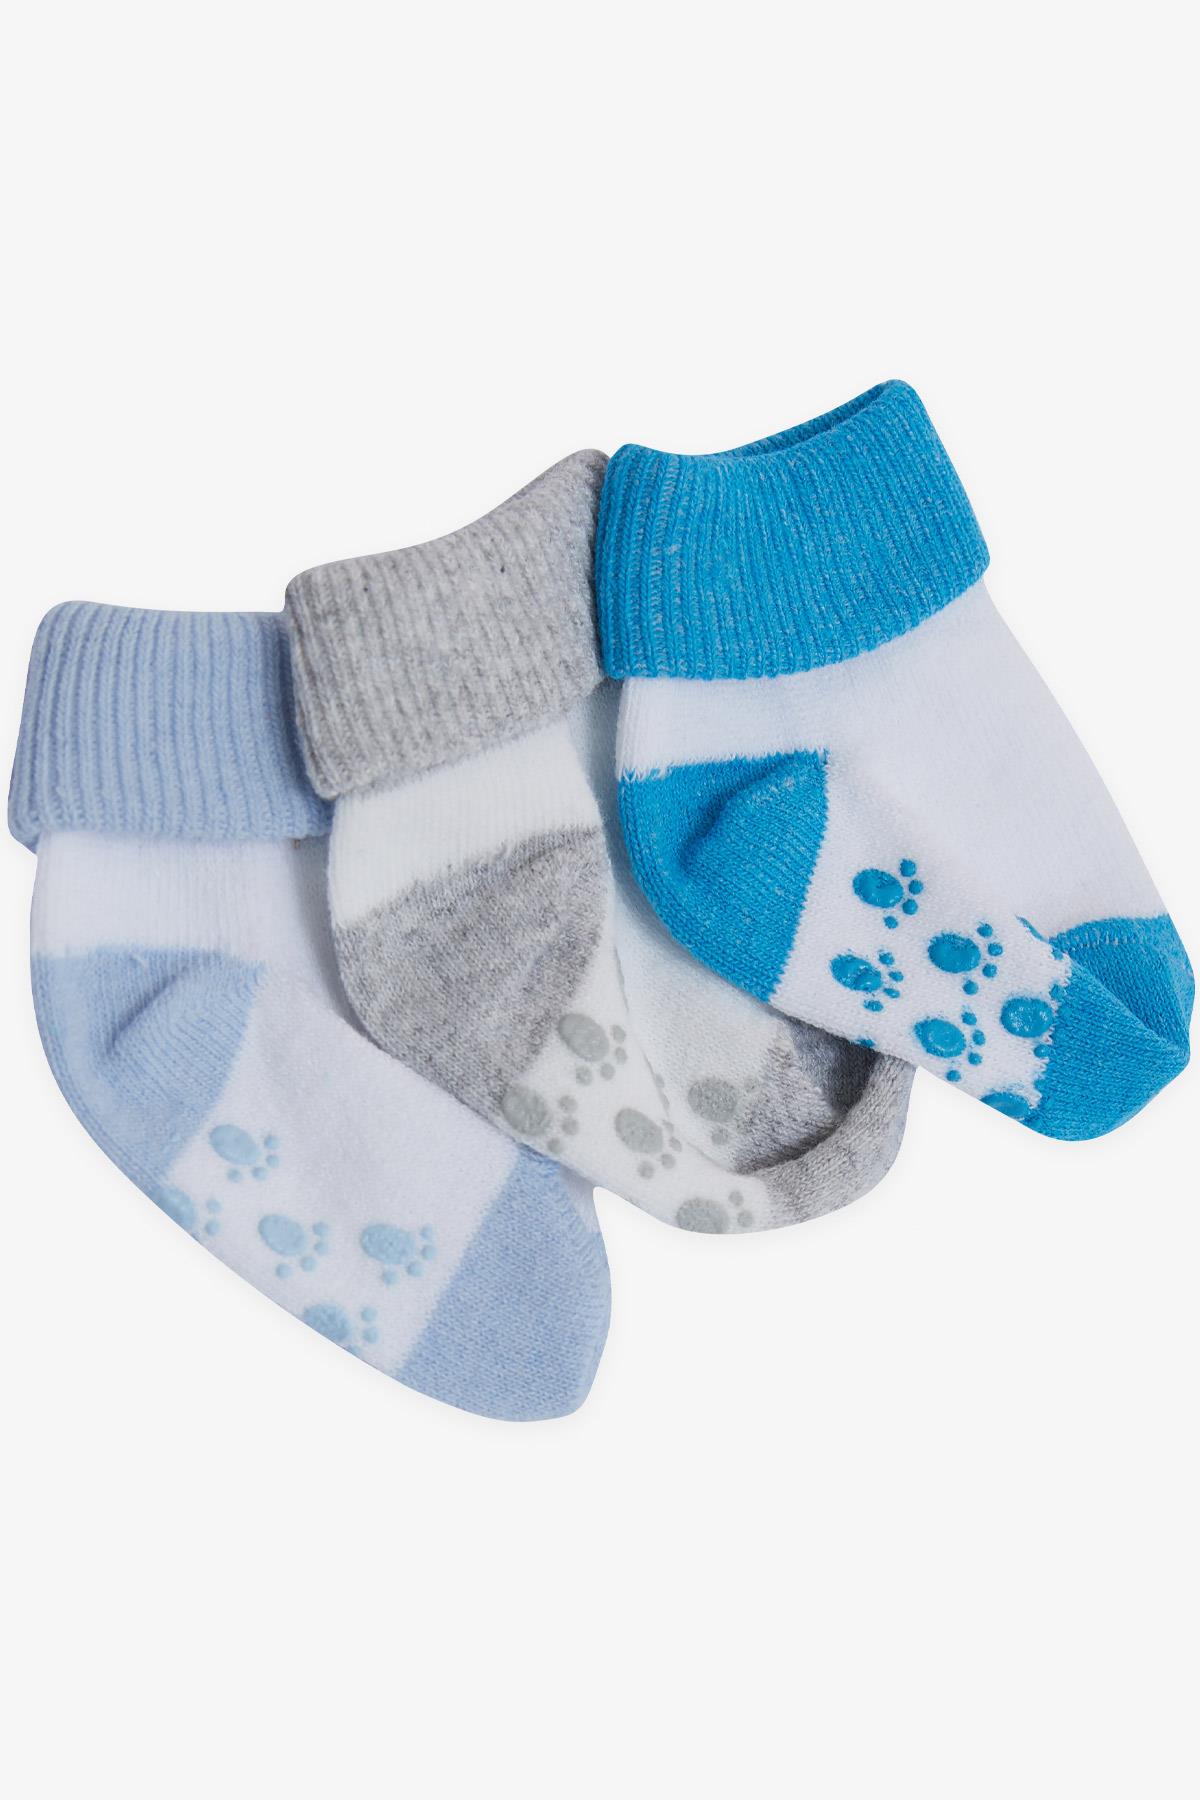 Erkek Bebek Yenidoğan Çorap 2 Renkli 3 lü Karışık Renk 0-3 Ay - Sevimli  Bebek Çorapları | Breeze